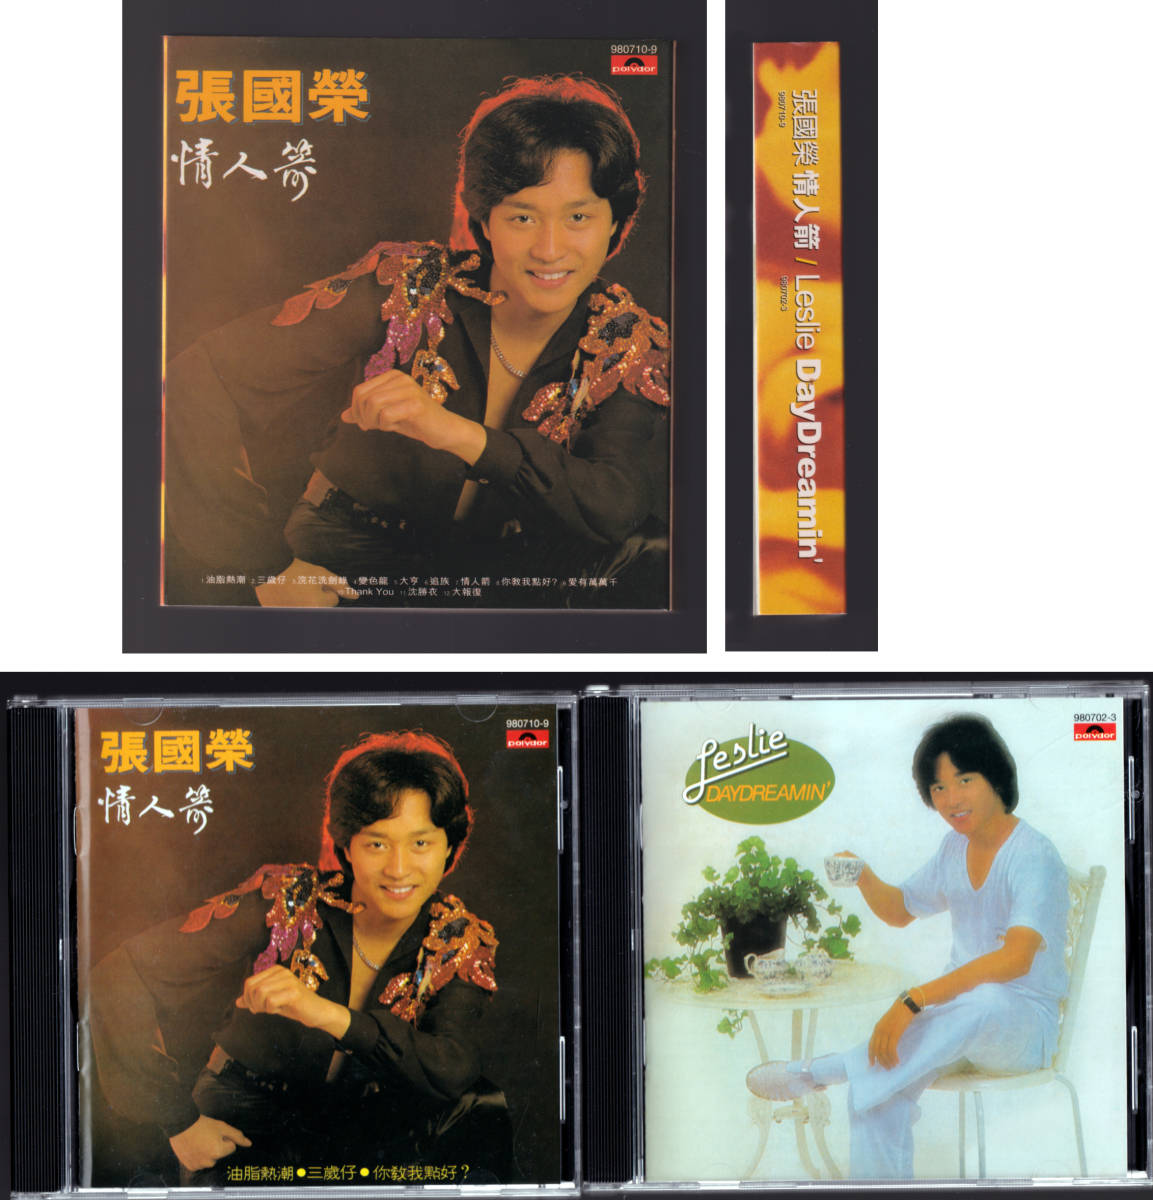 適当な価格 レスリーチャン 香港版CD 2枚組 cominox.com.mx